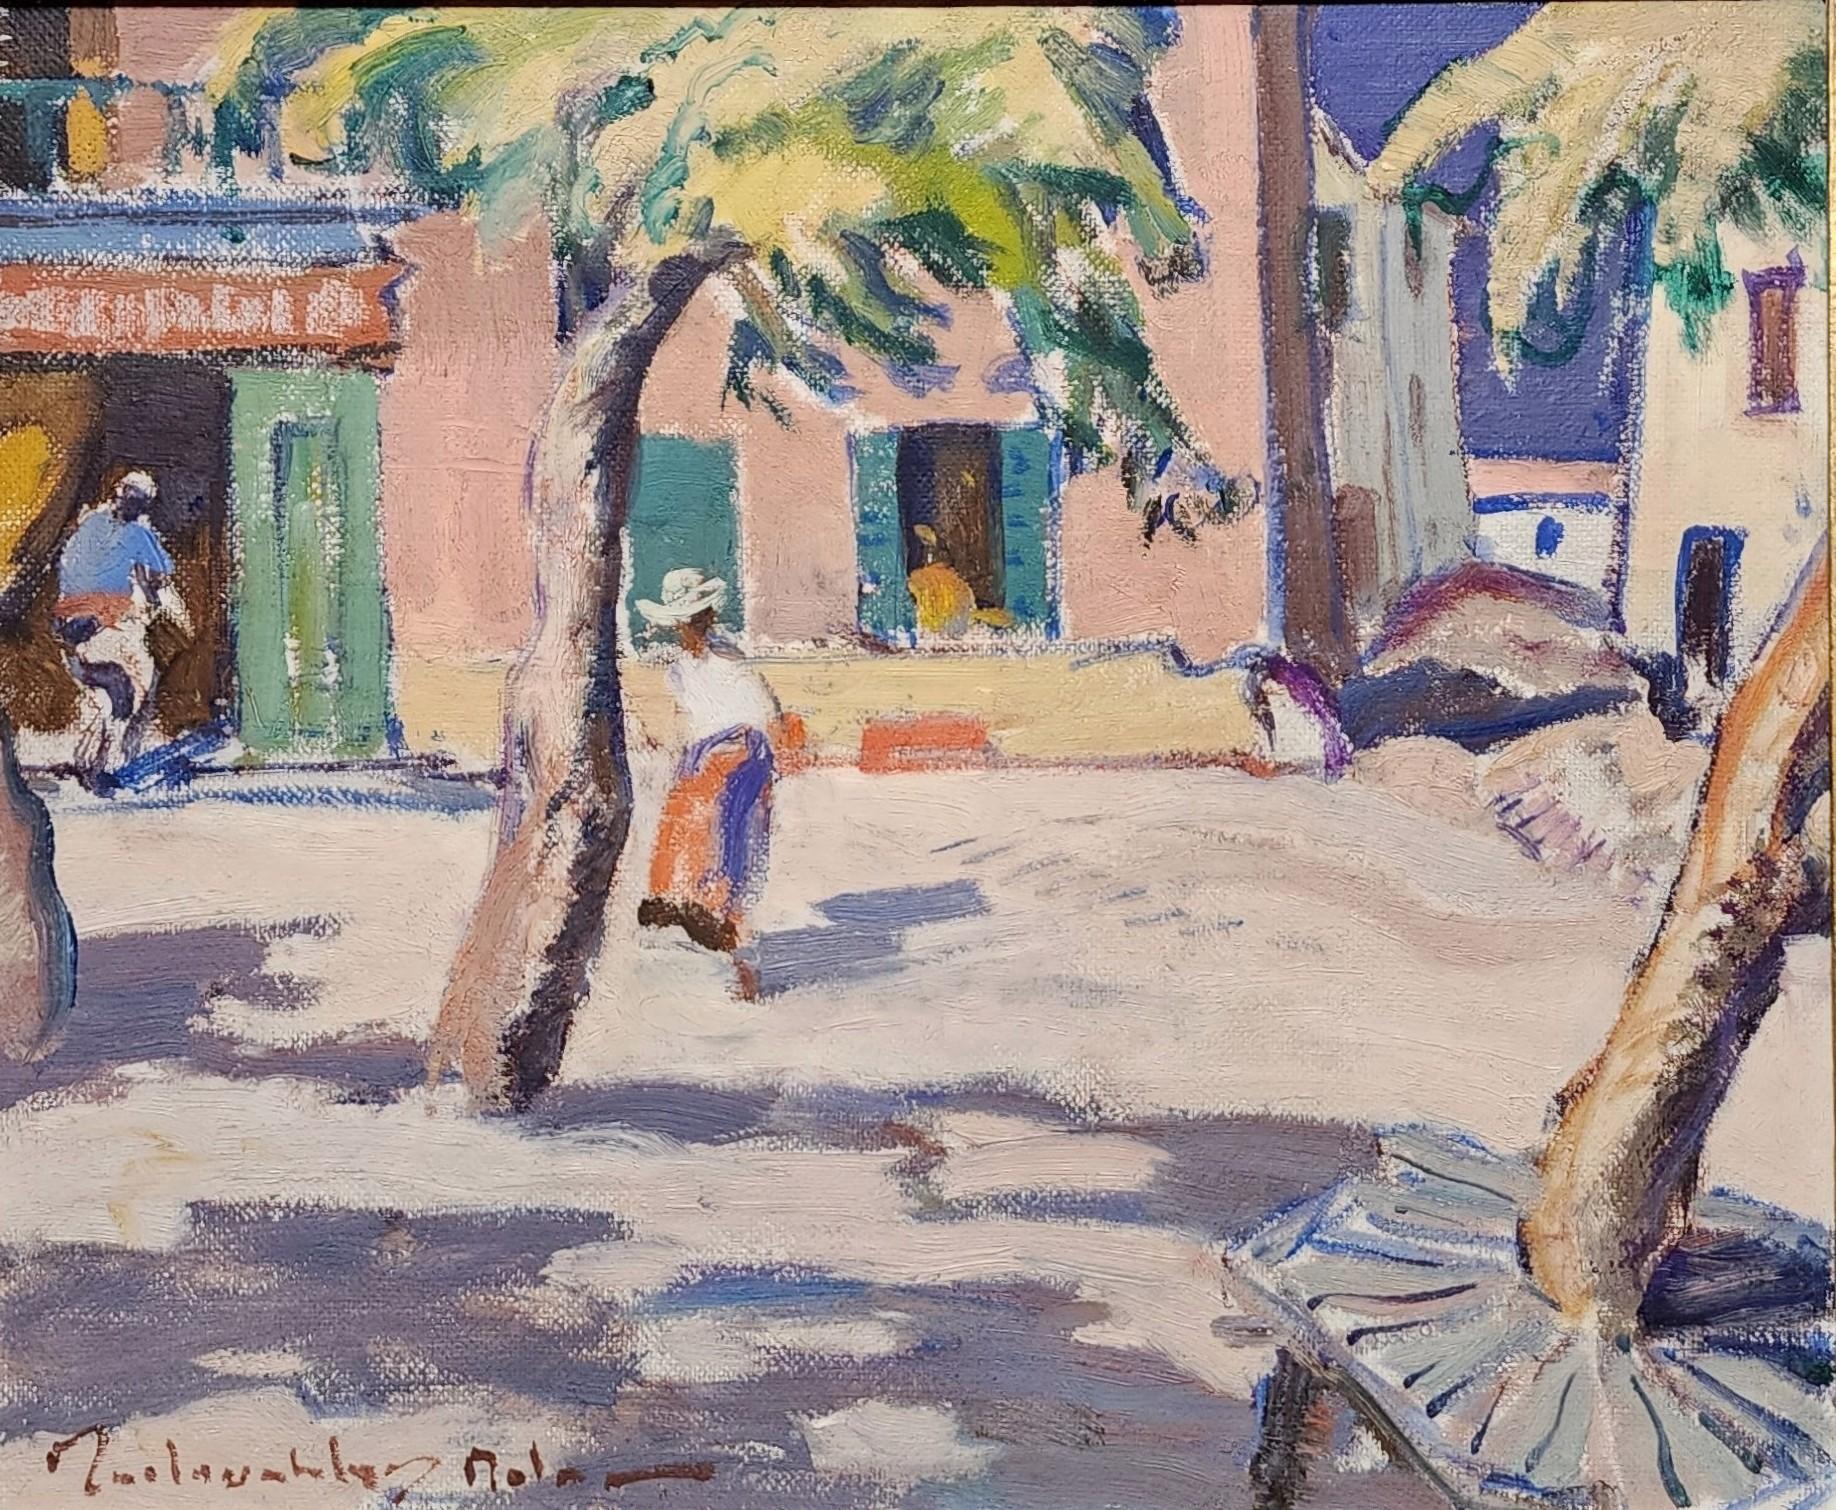 St. Tropez, 1924, John Maclauchlan Milne, French Riviera, Côte d'Azur, Colourist For Sale 1